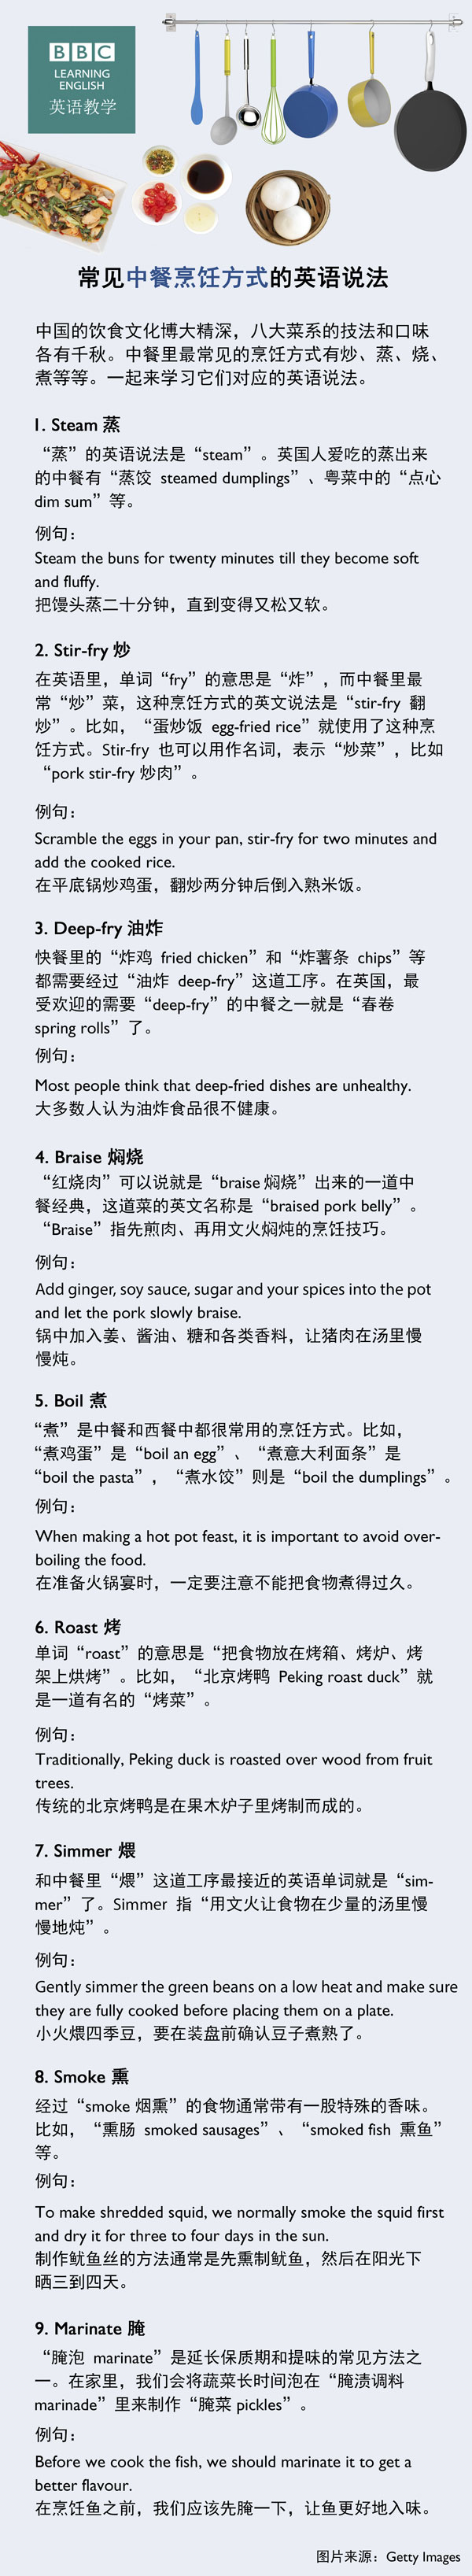 常见中餐烹饪方式的英语说法